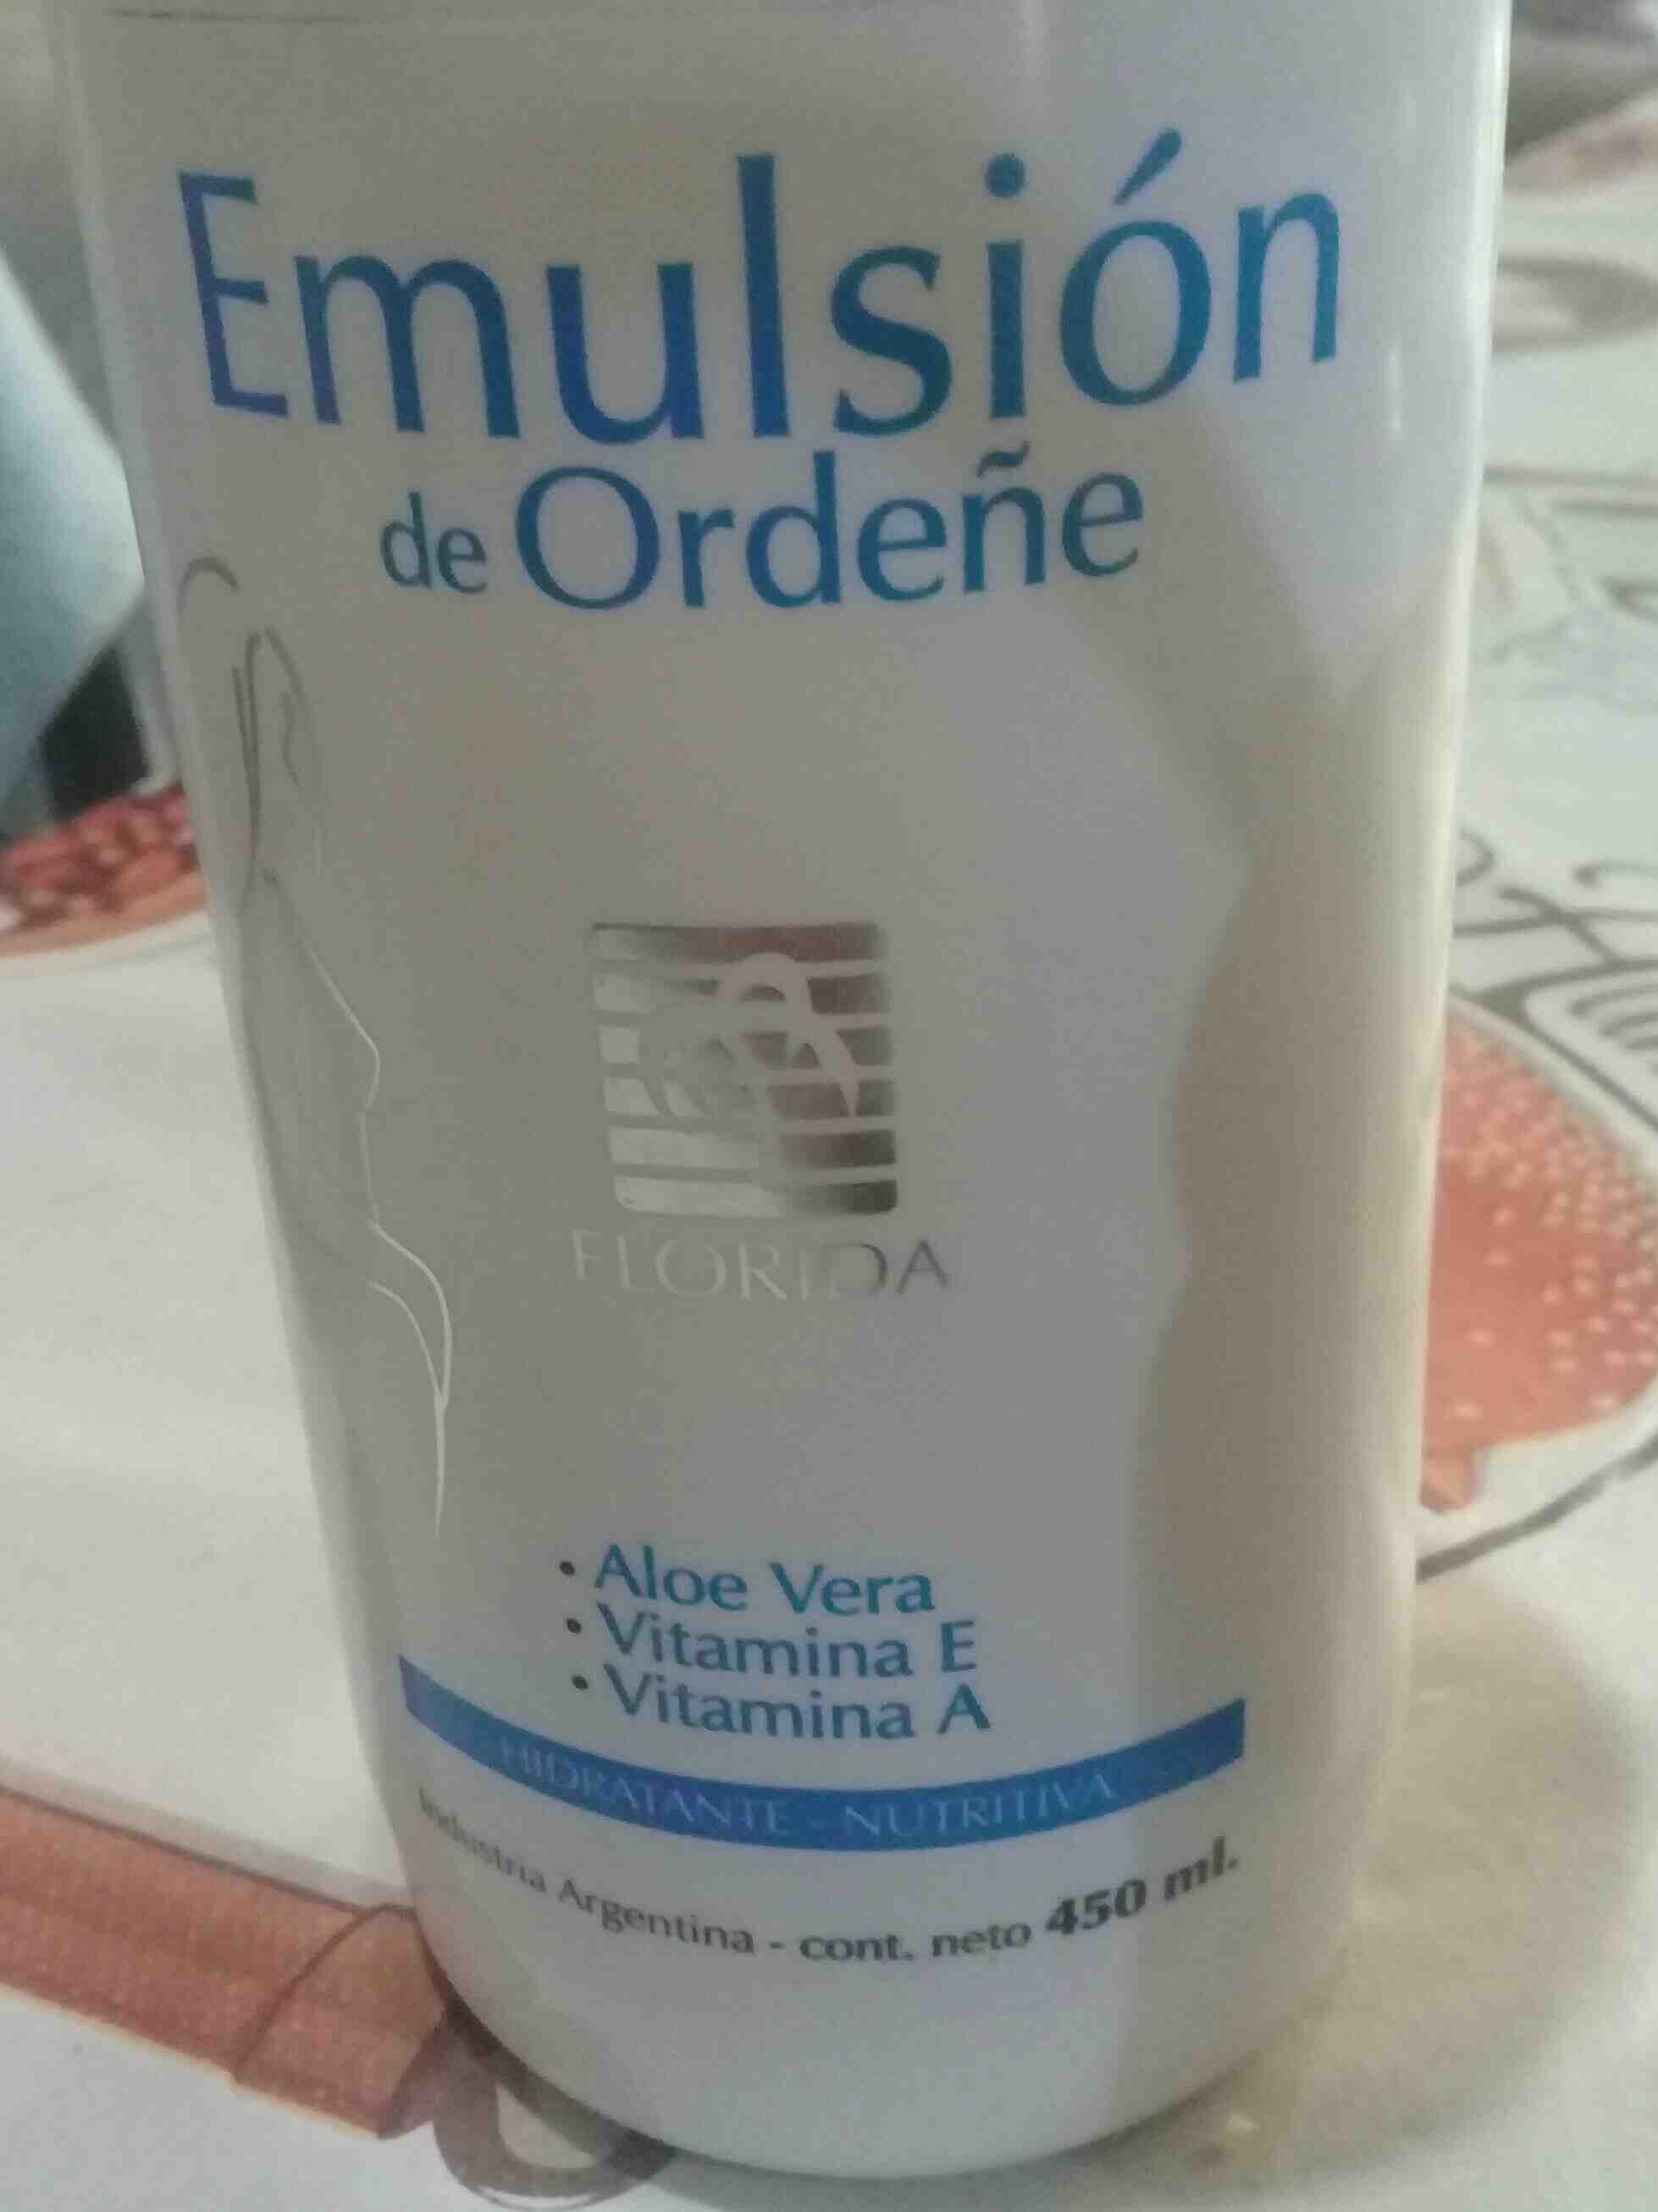 Emulsion de Ordeñe - Продукт - en